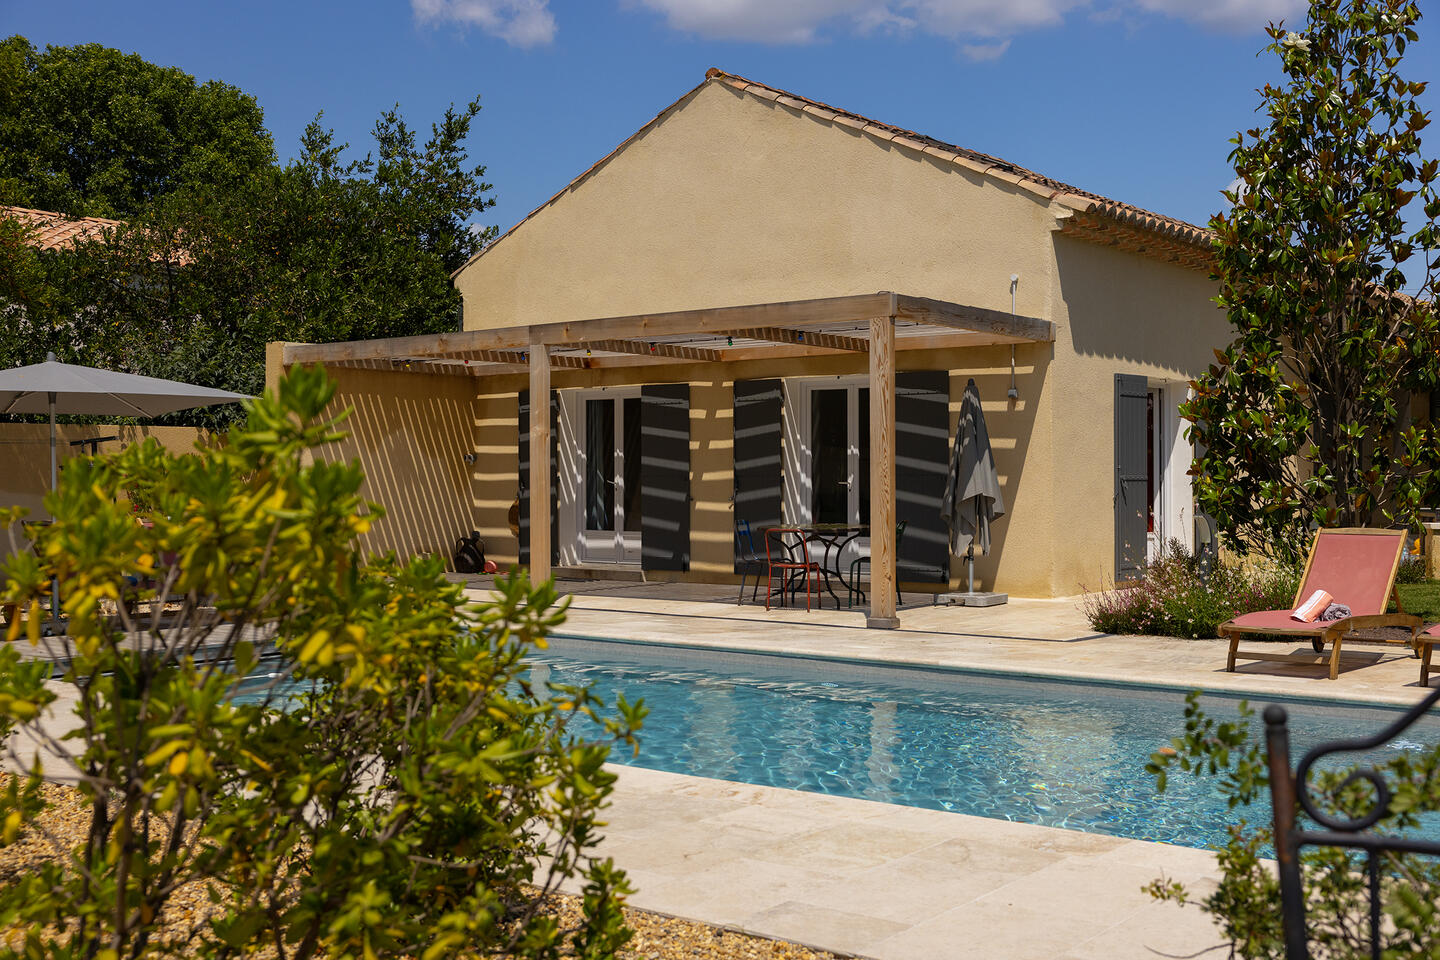 41 - La Maison de Village: Villa: Pool - Blick auf das Gästehaus